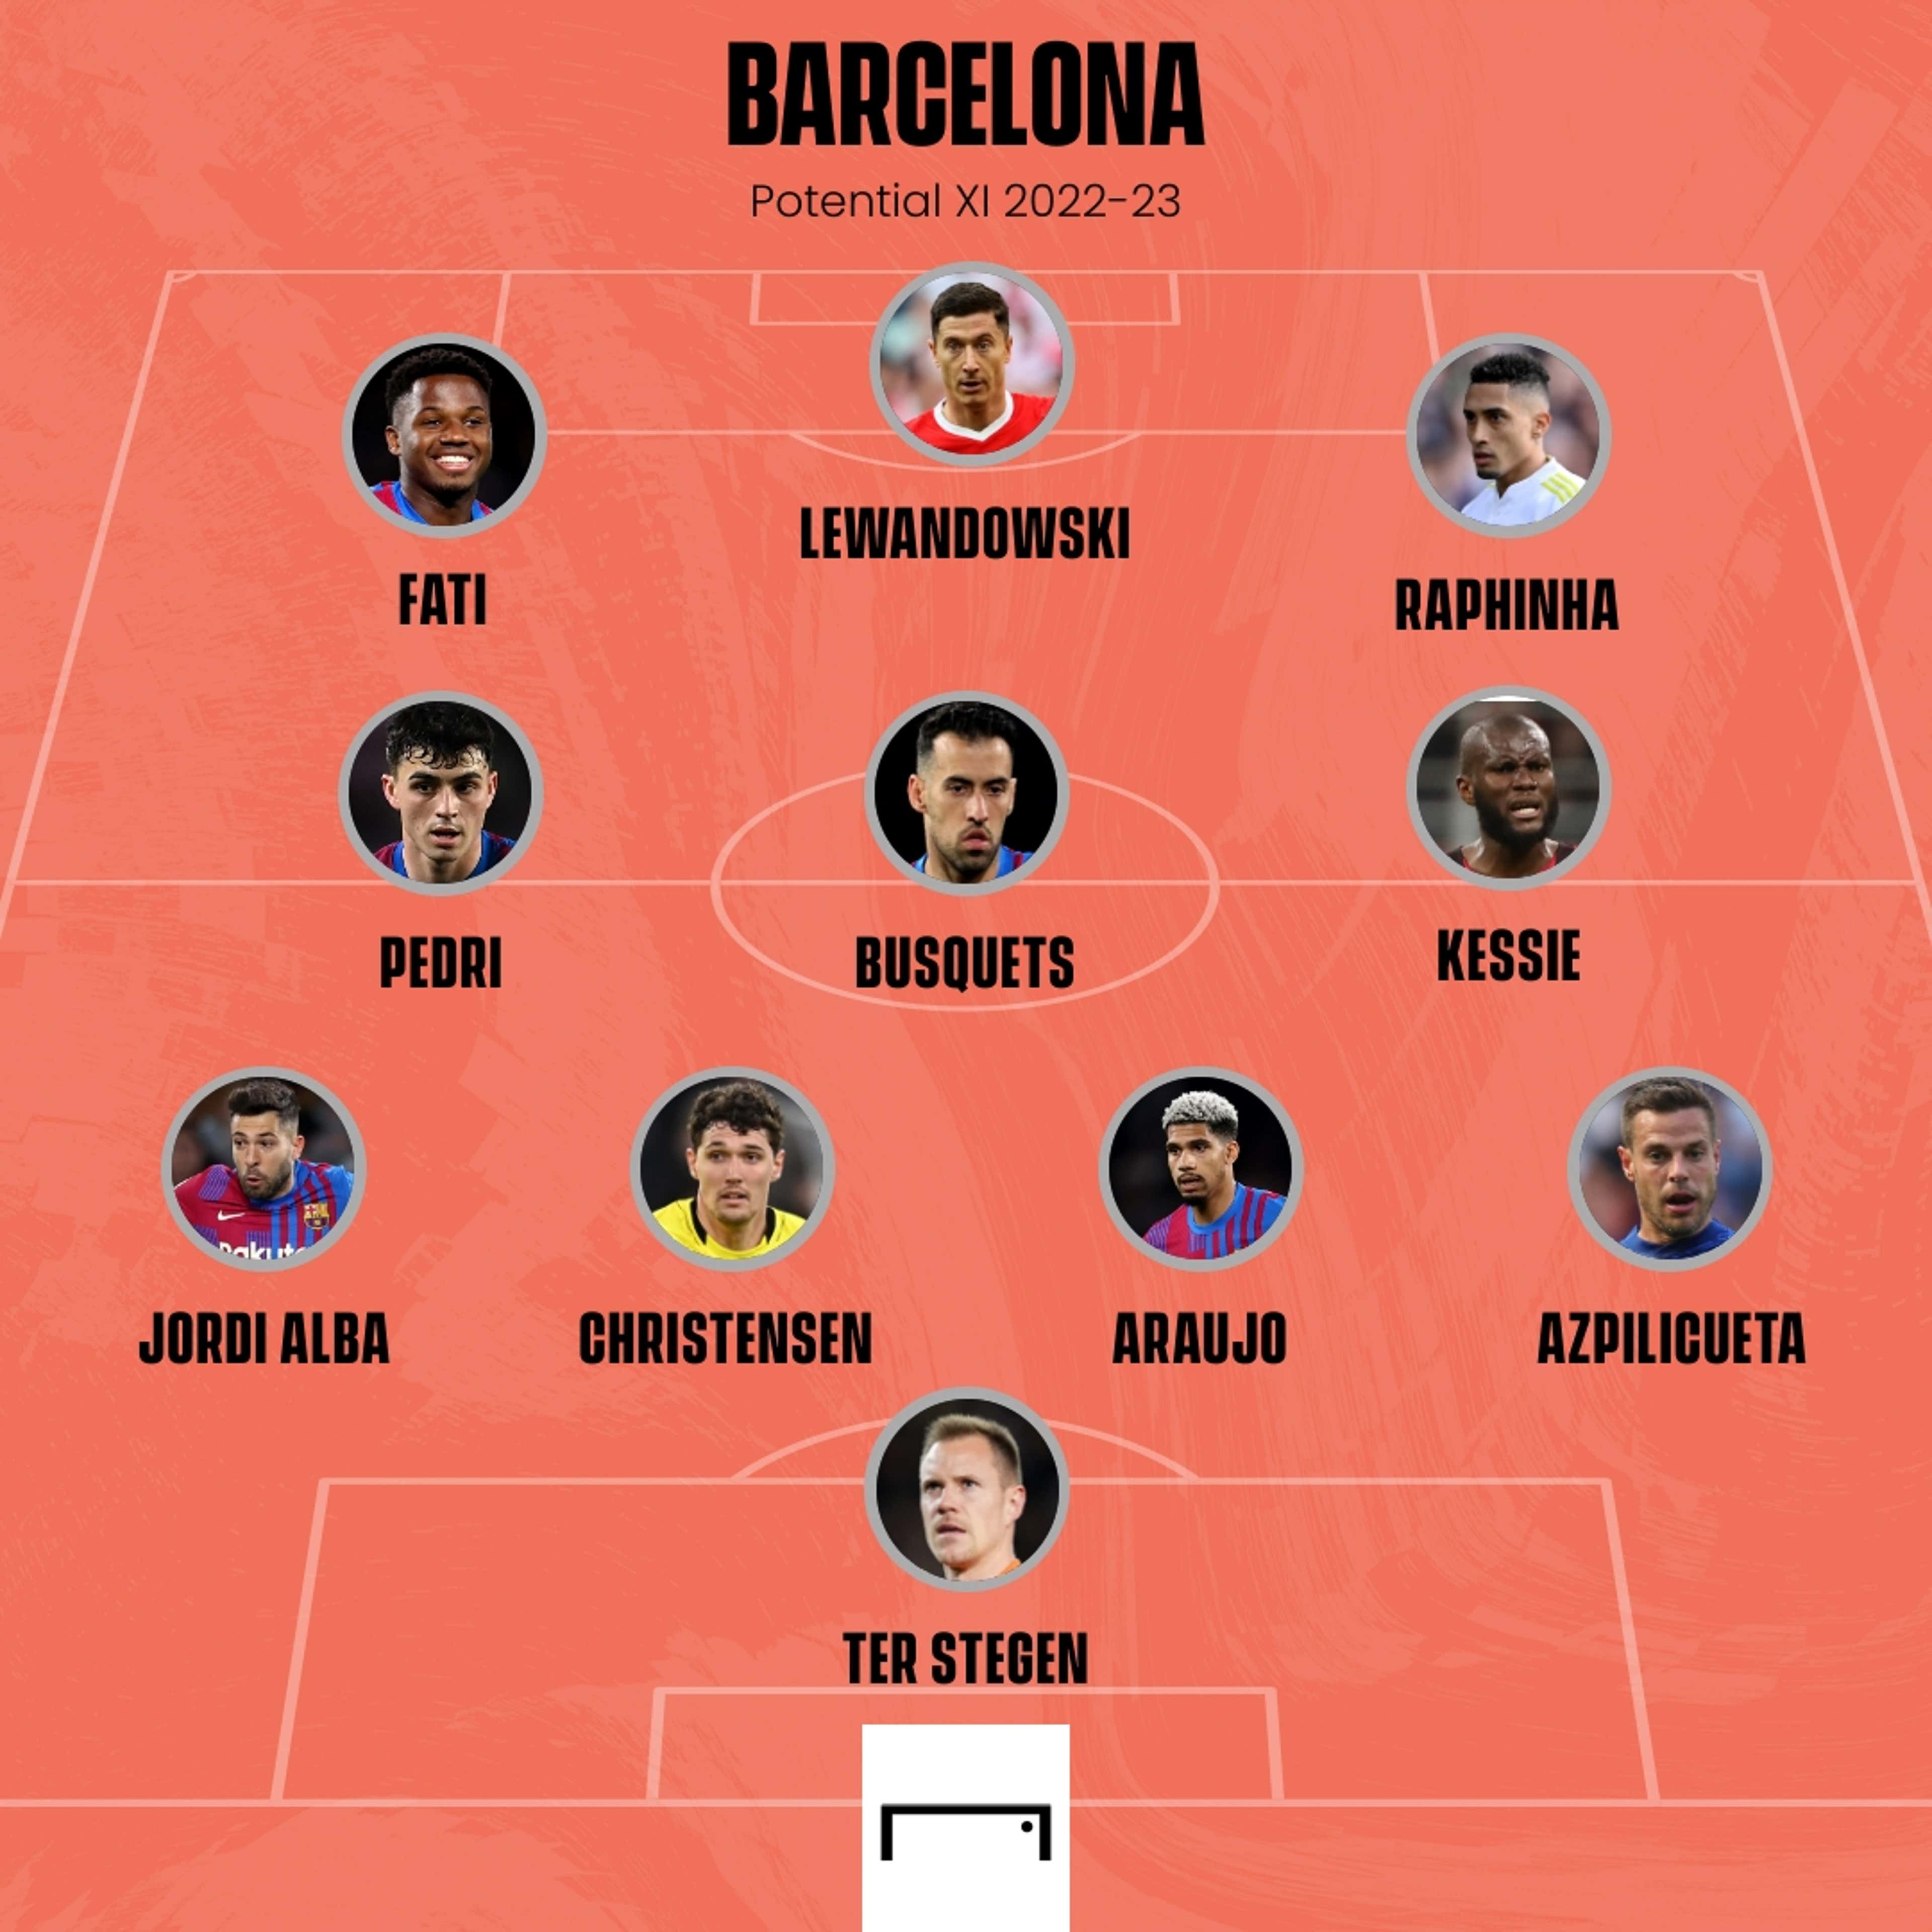 Barcelona potential XI 2022-23